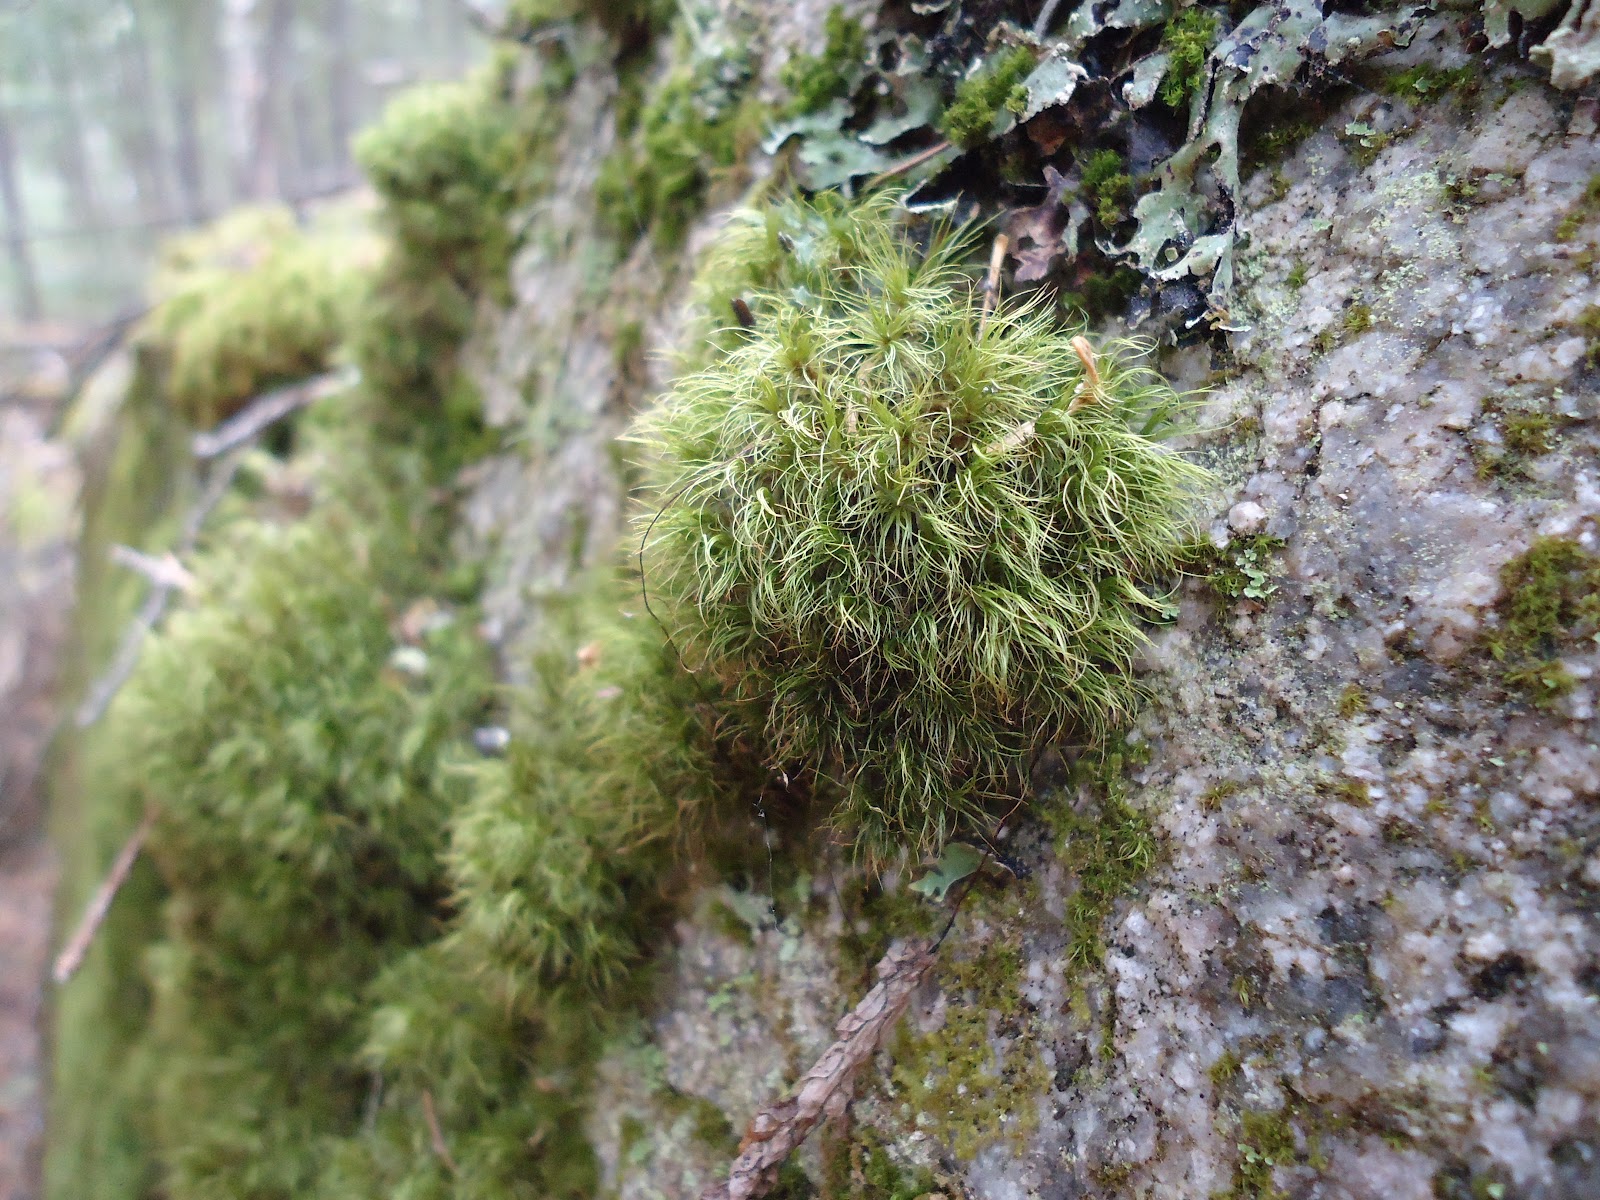 Oxygen Grows On Trees: Erratic Moss